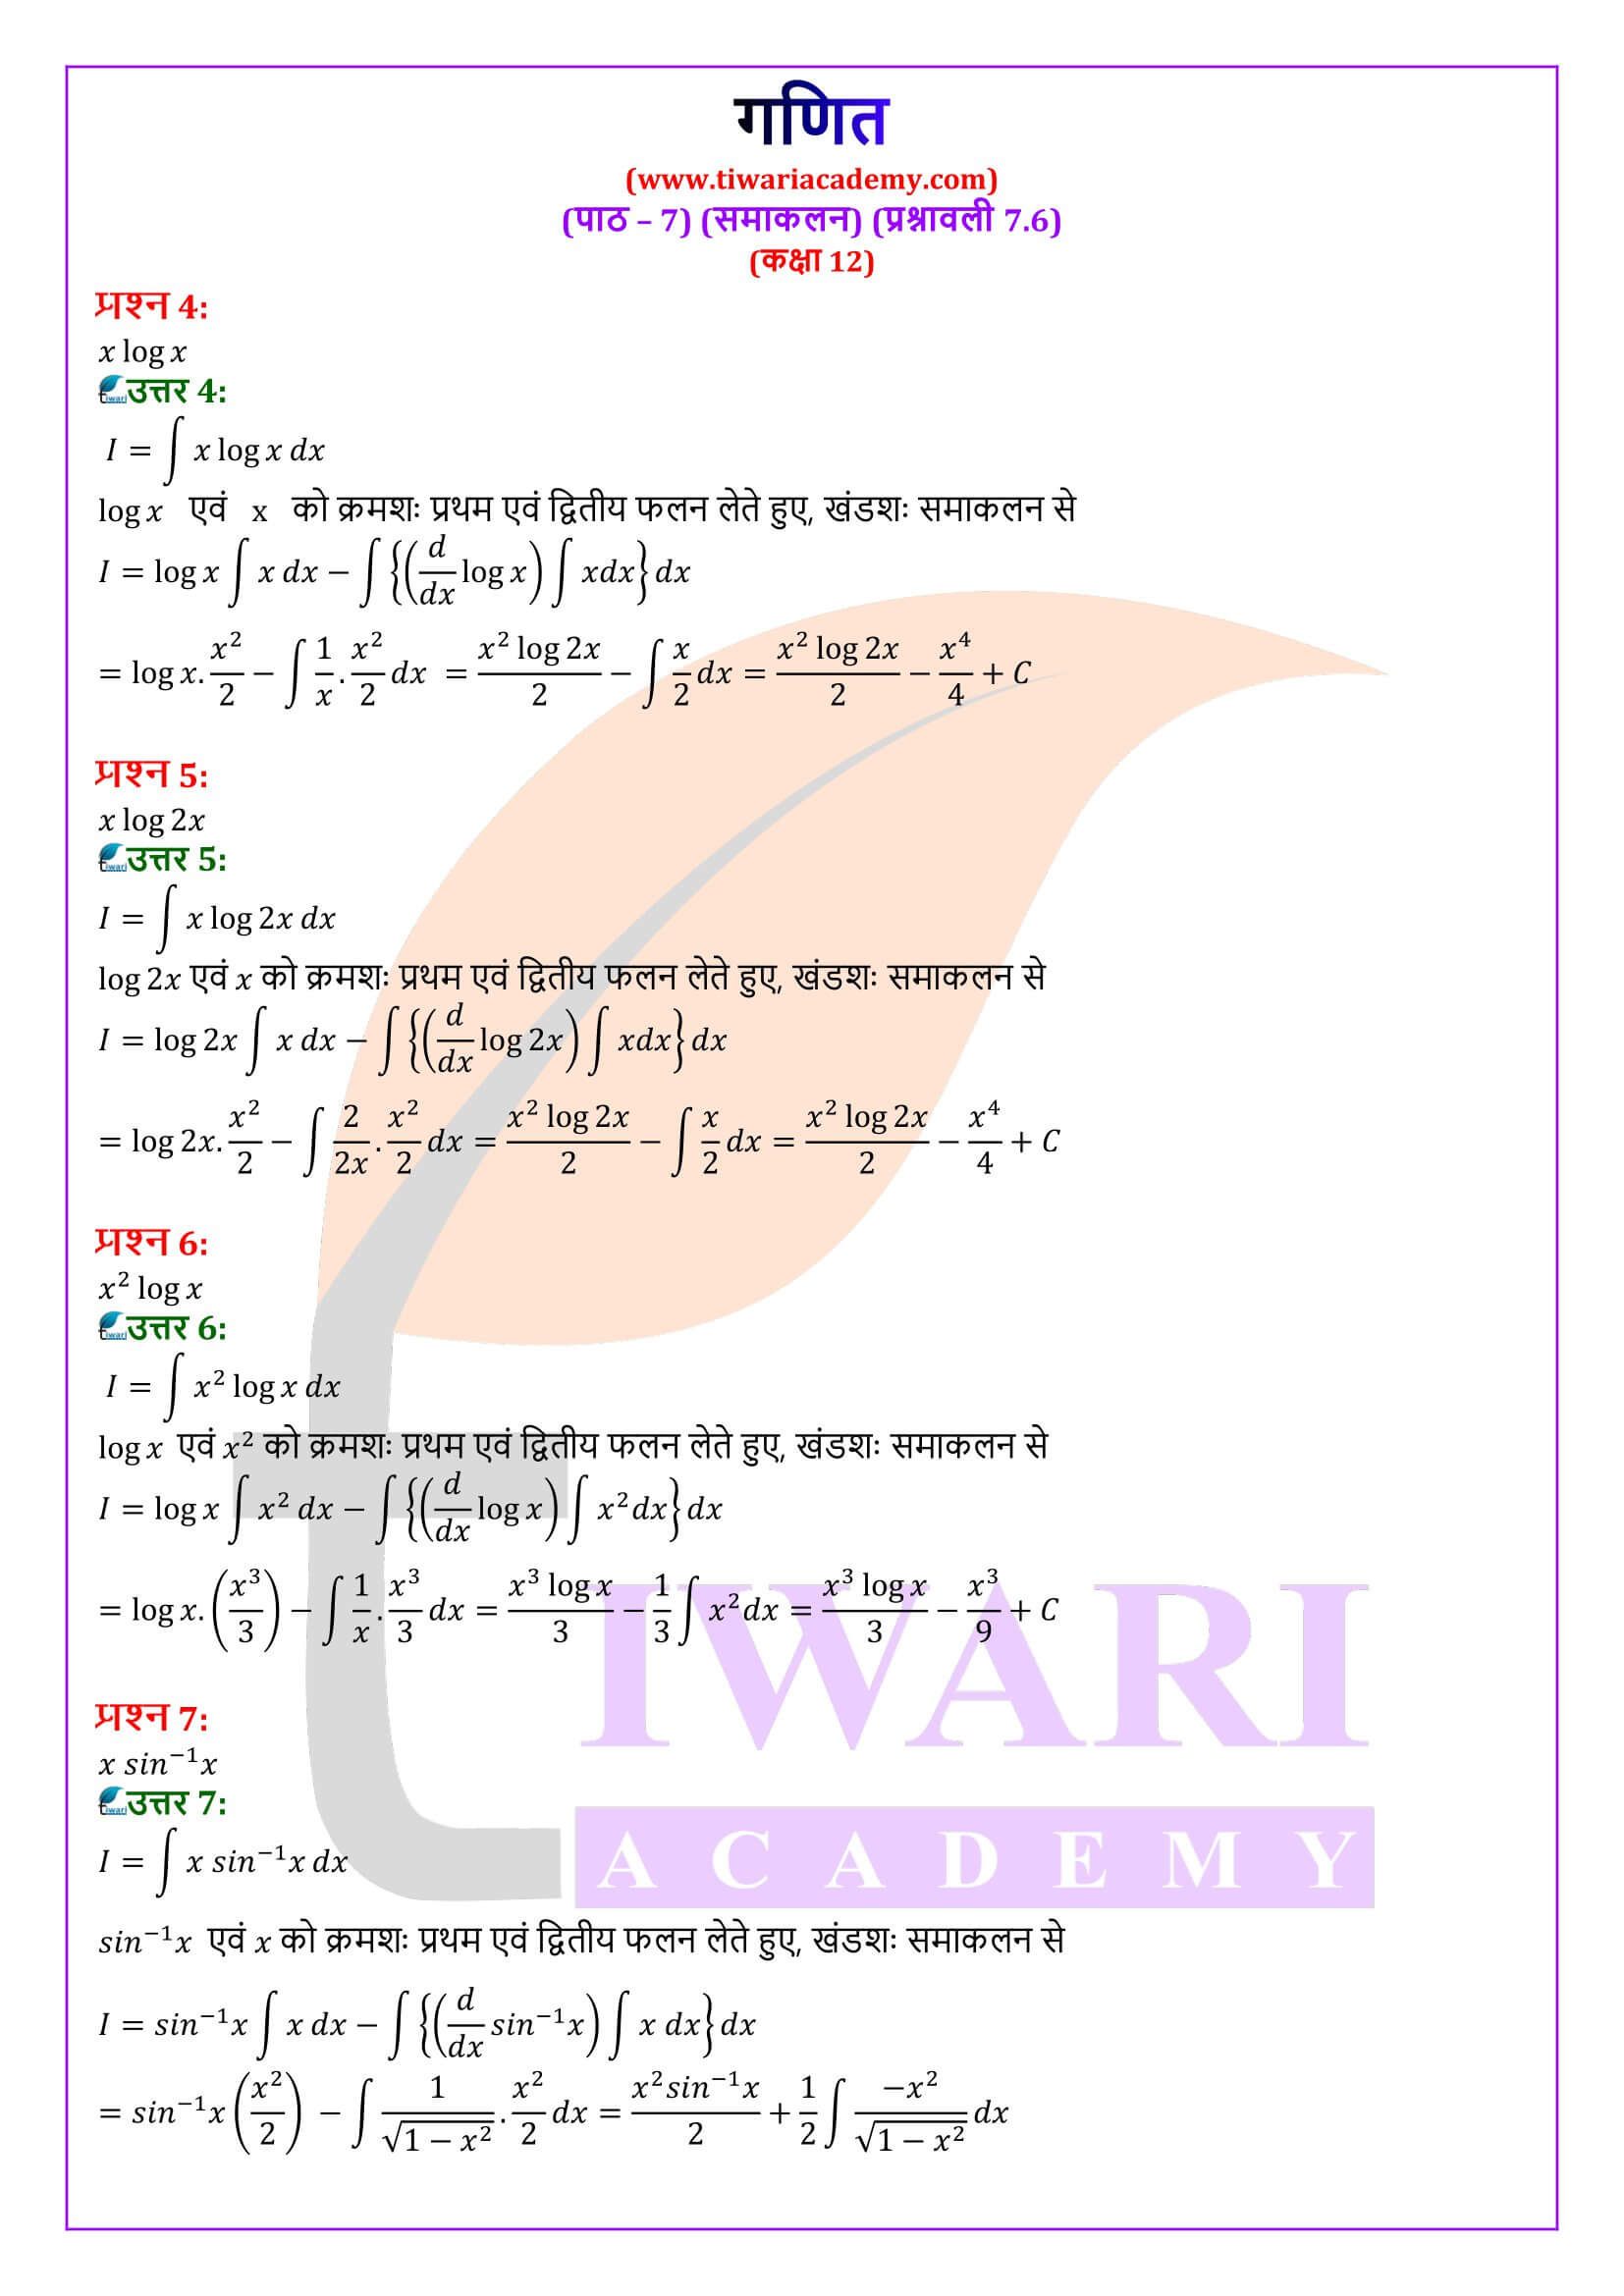 कक्षा 12 गणित अध्याय 7 प्रश्नावली 7.6 के सवाल जवाब